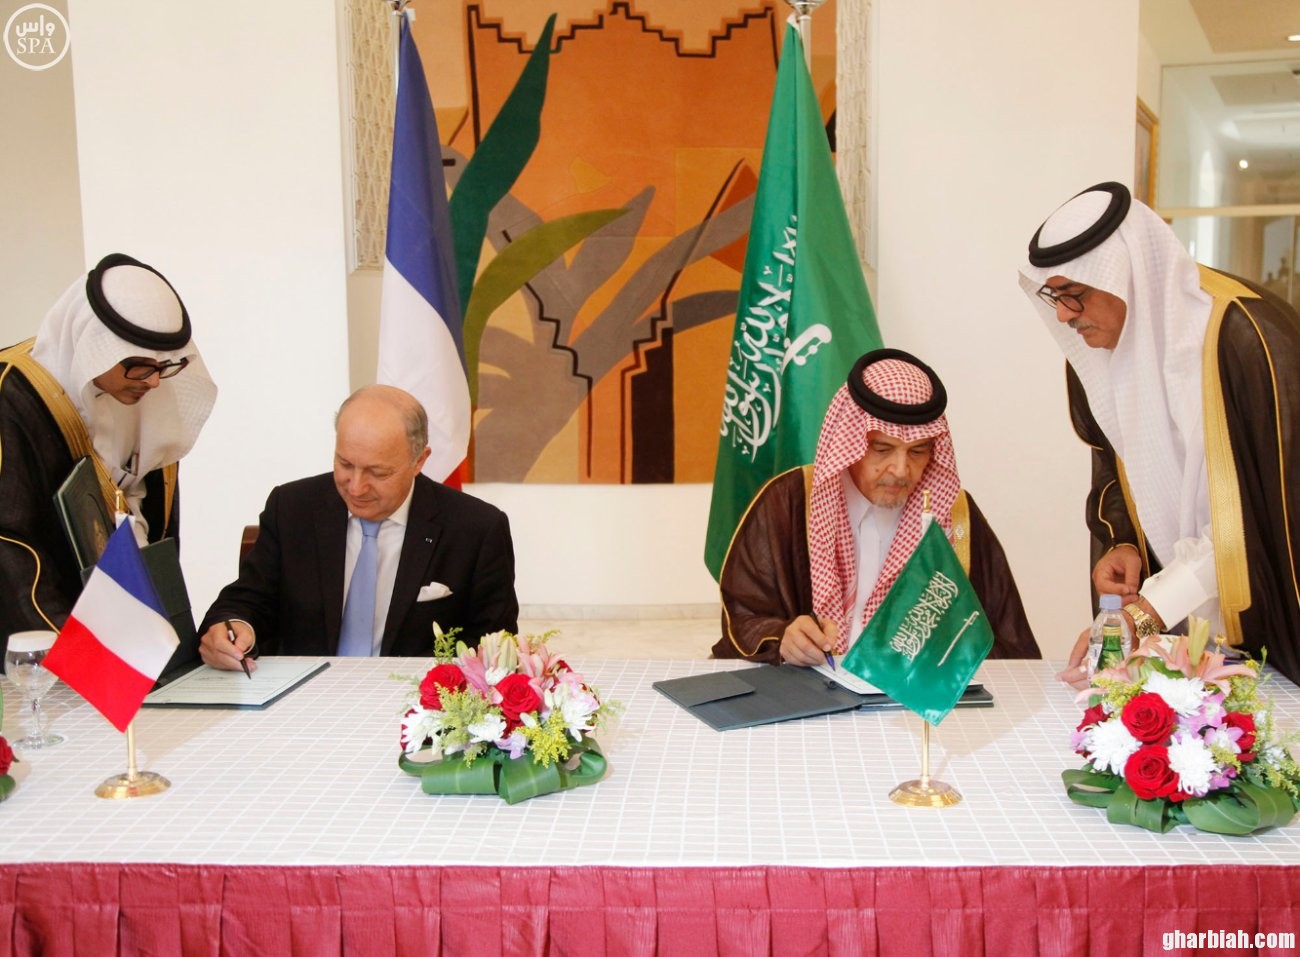 الأمير سعود الفيصل يوقع اتفاقية تعاون مع وزير الخارجية الفرنسي